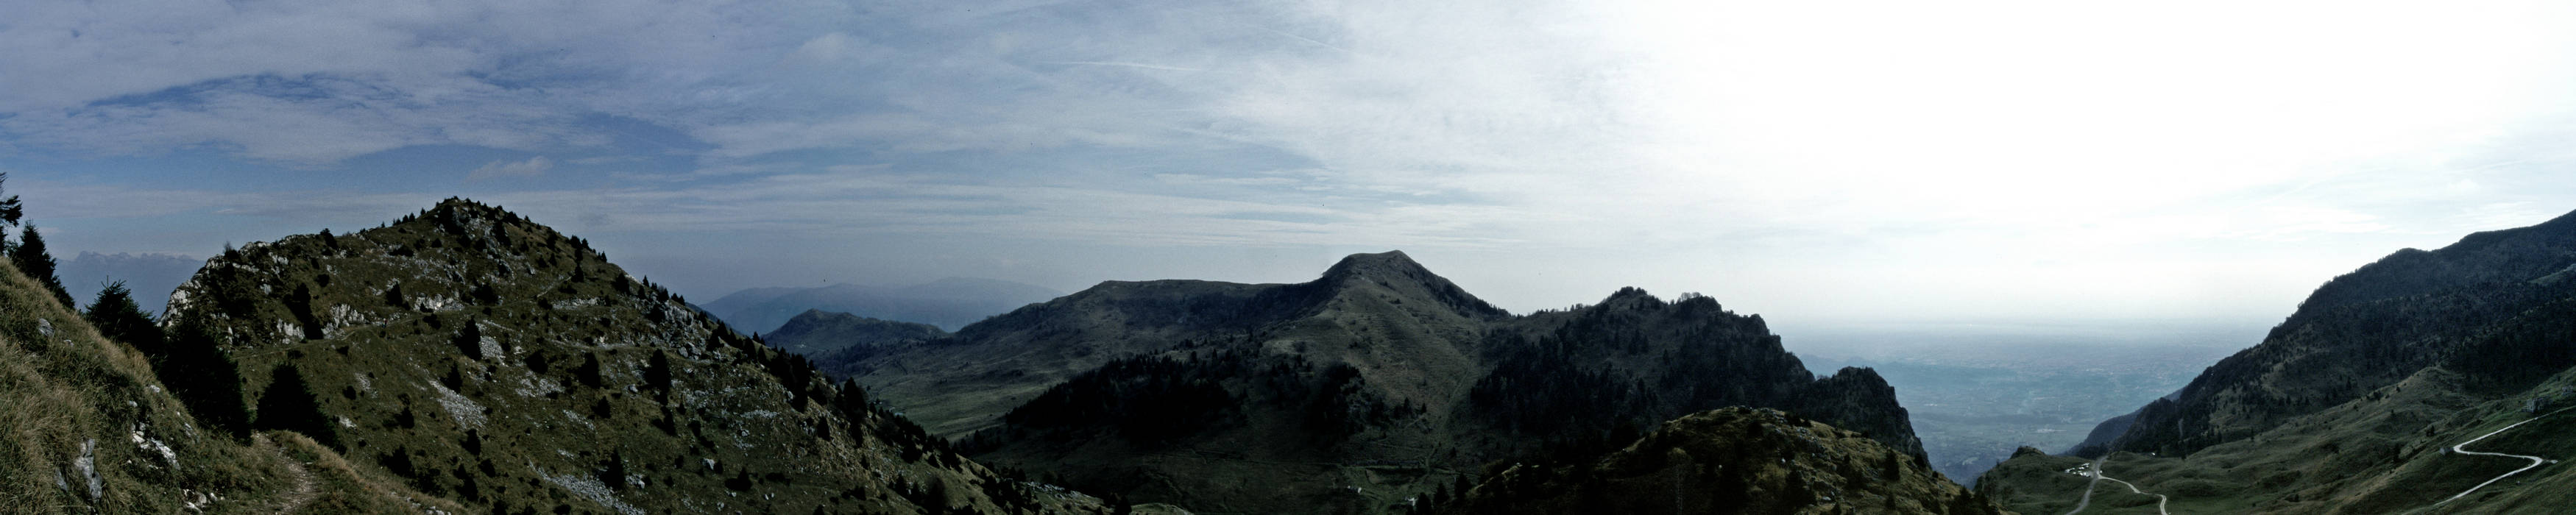 Monte Grappa - fotografia panoramica